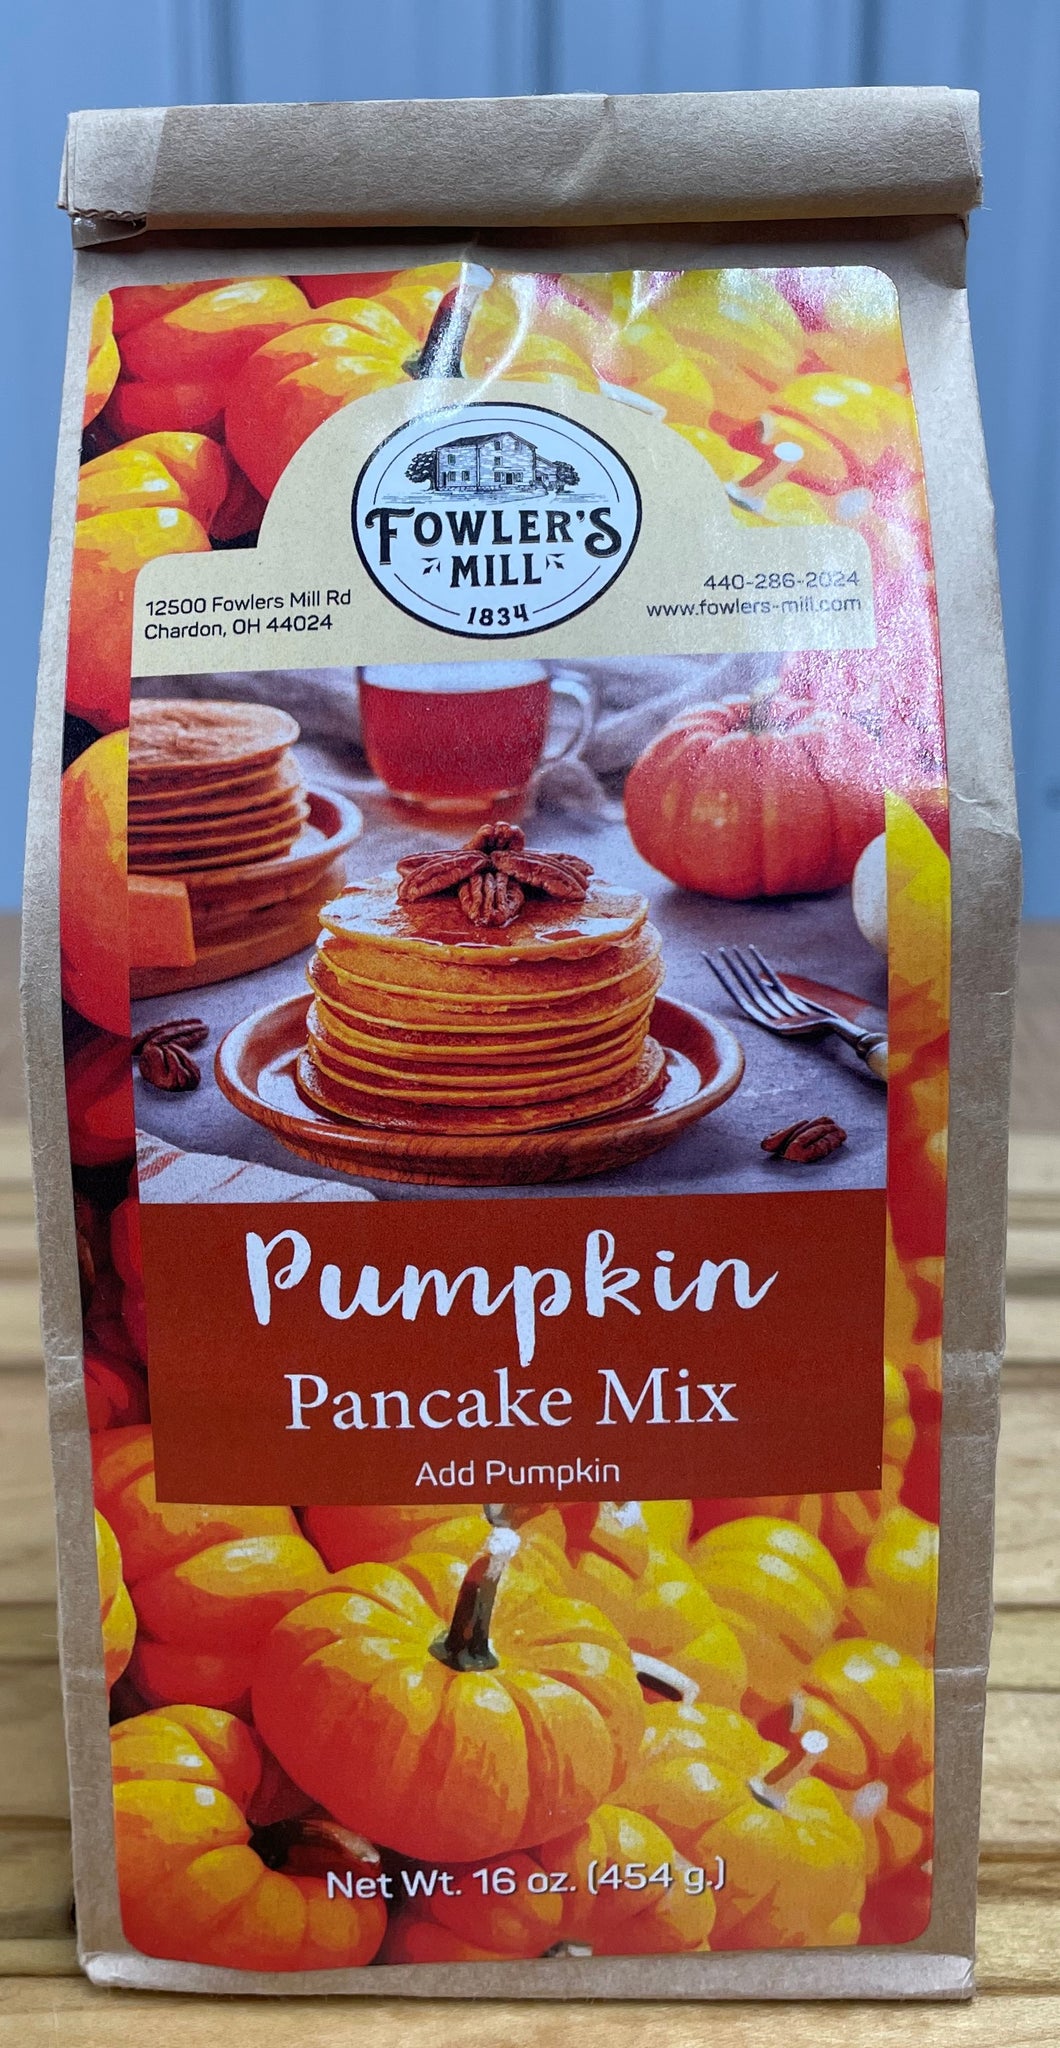 Fowler's Mill Pumpkin Pancake Mix